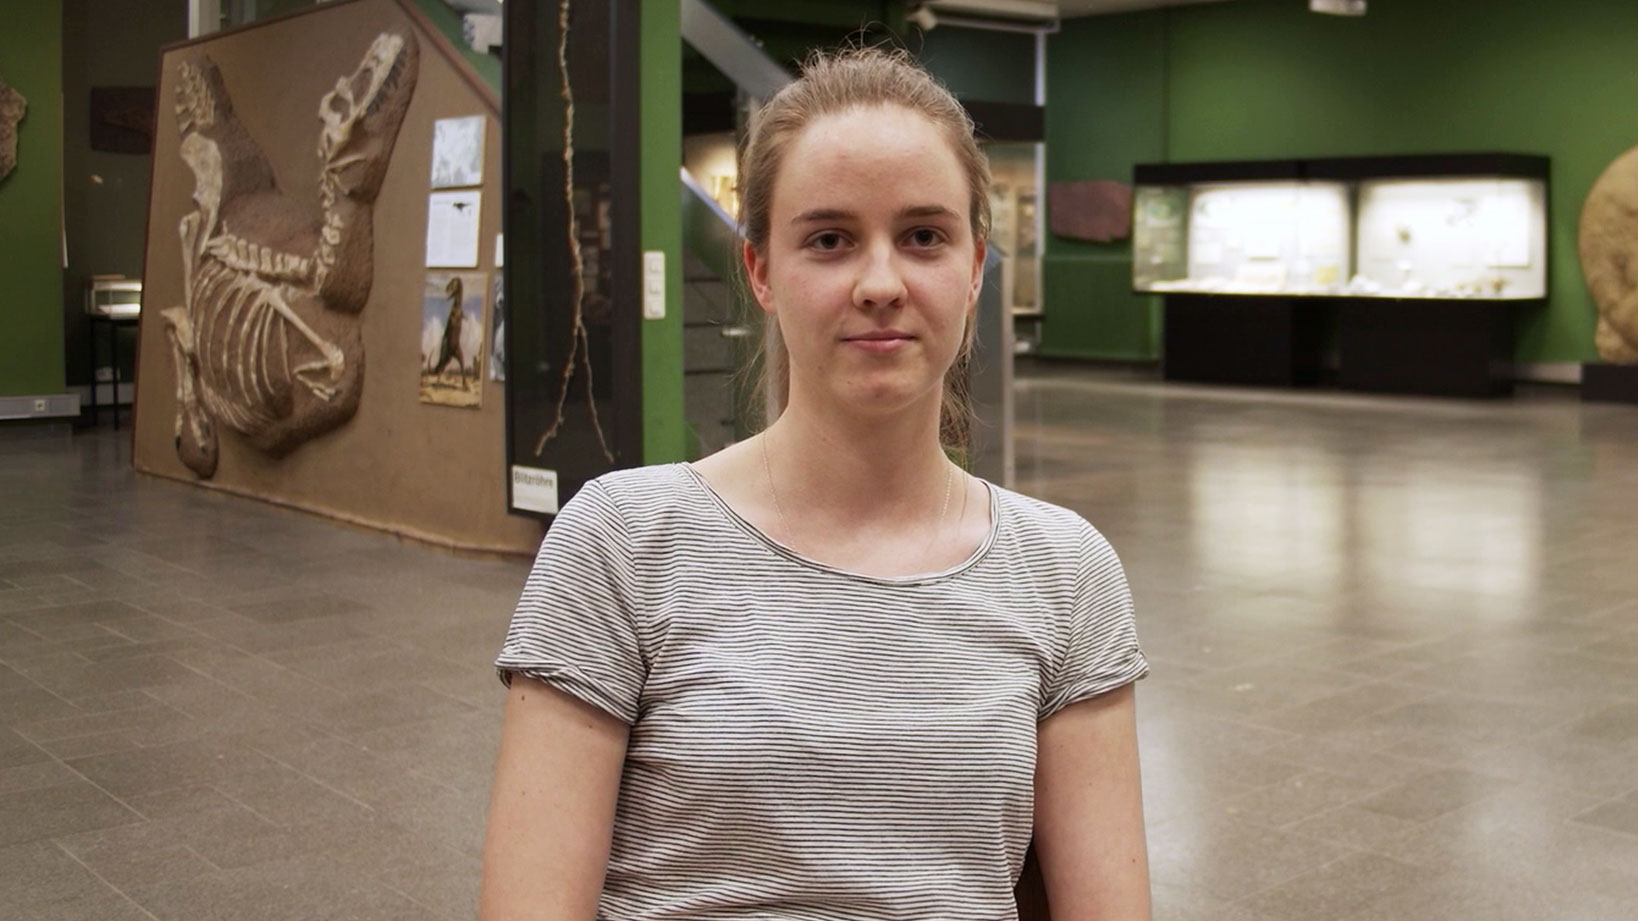 Video: Victoria erklärt, warum sie Biologie studiert